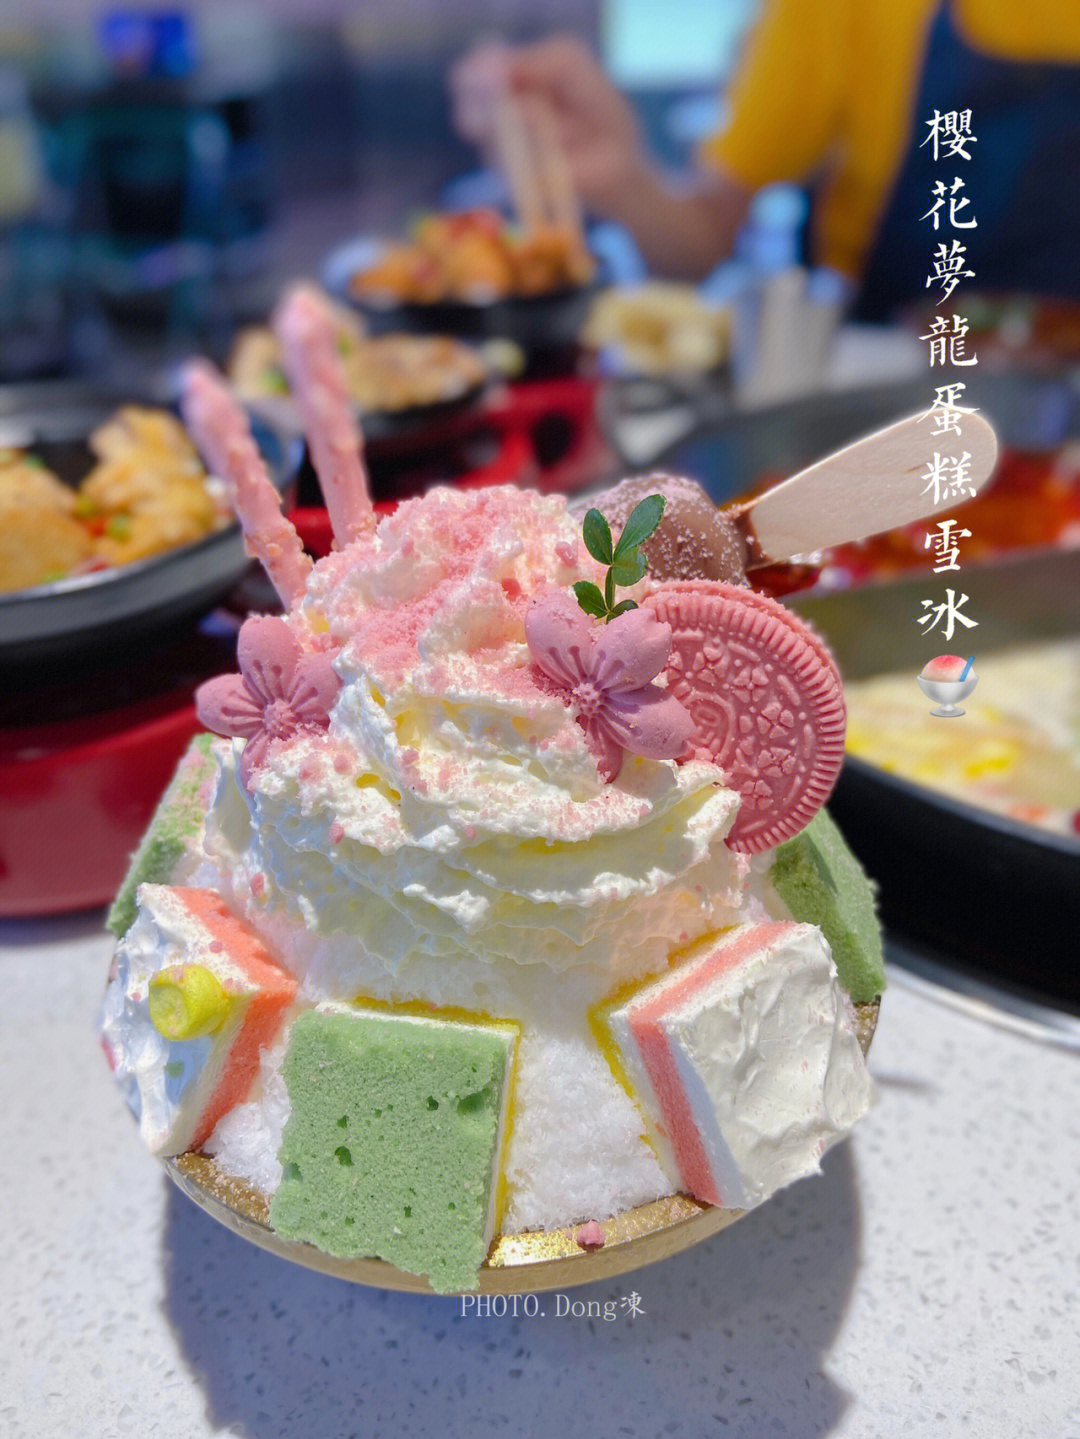 这家火锅店的樱花梦龙蛋糕雪冰太nice